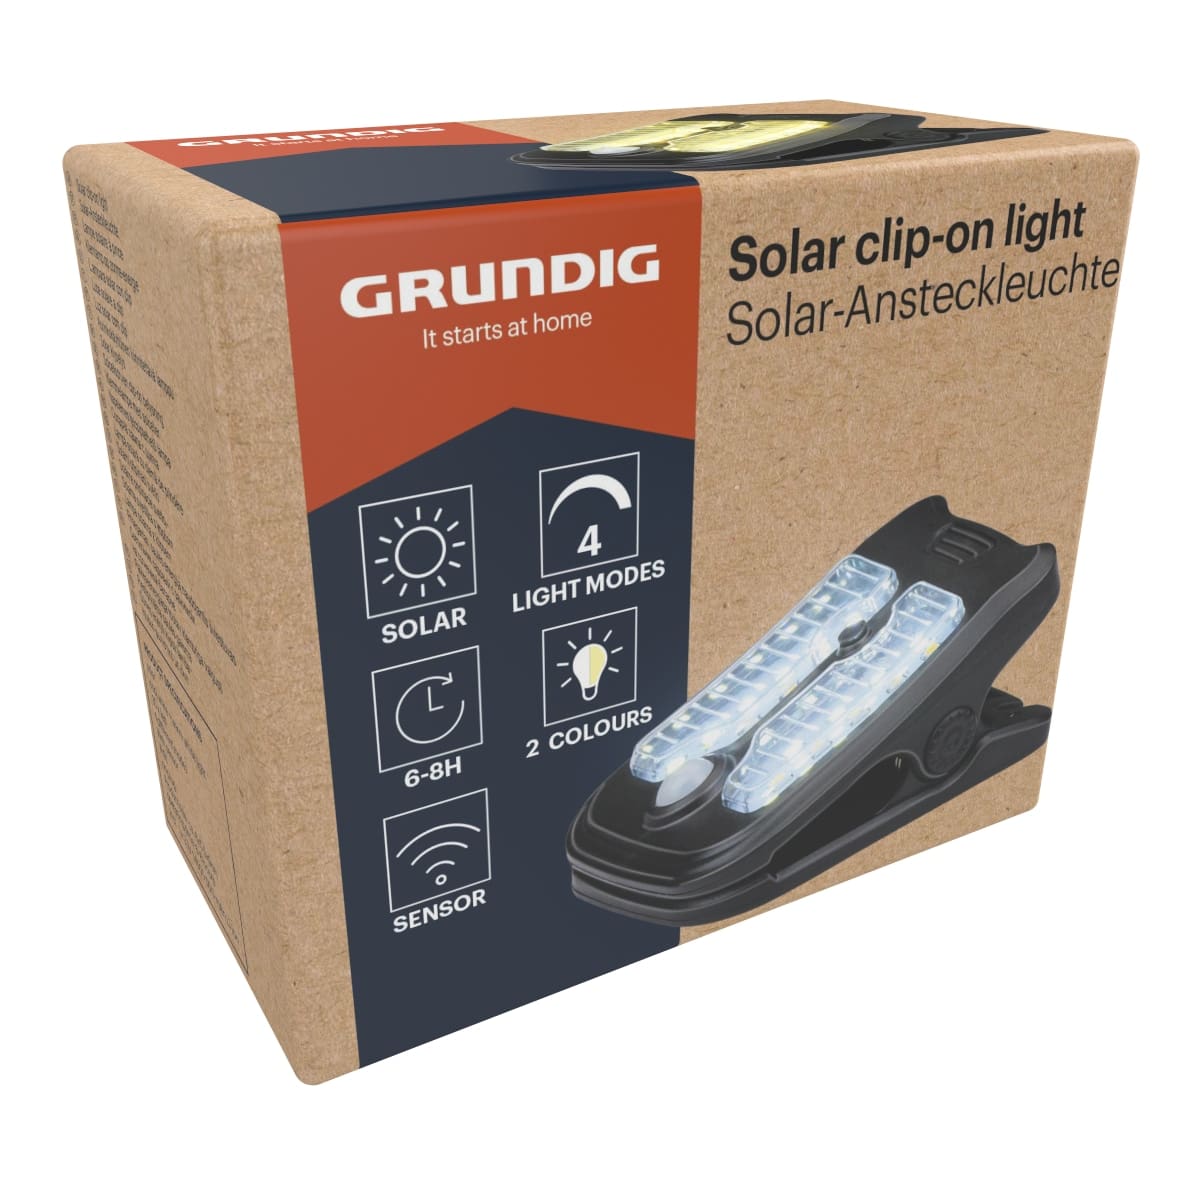 GRUNDIG LED-Solar-Ansteckleuchte 81x54x93 mm